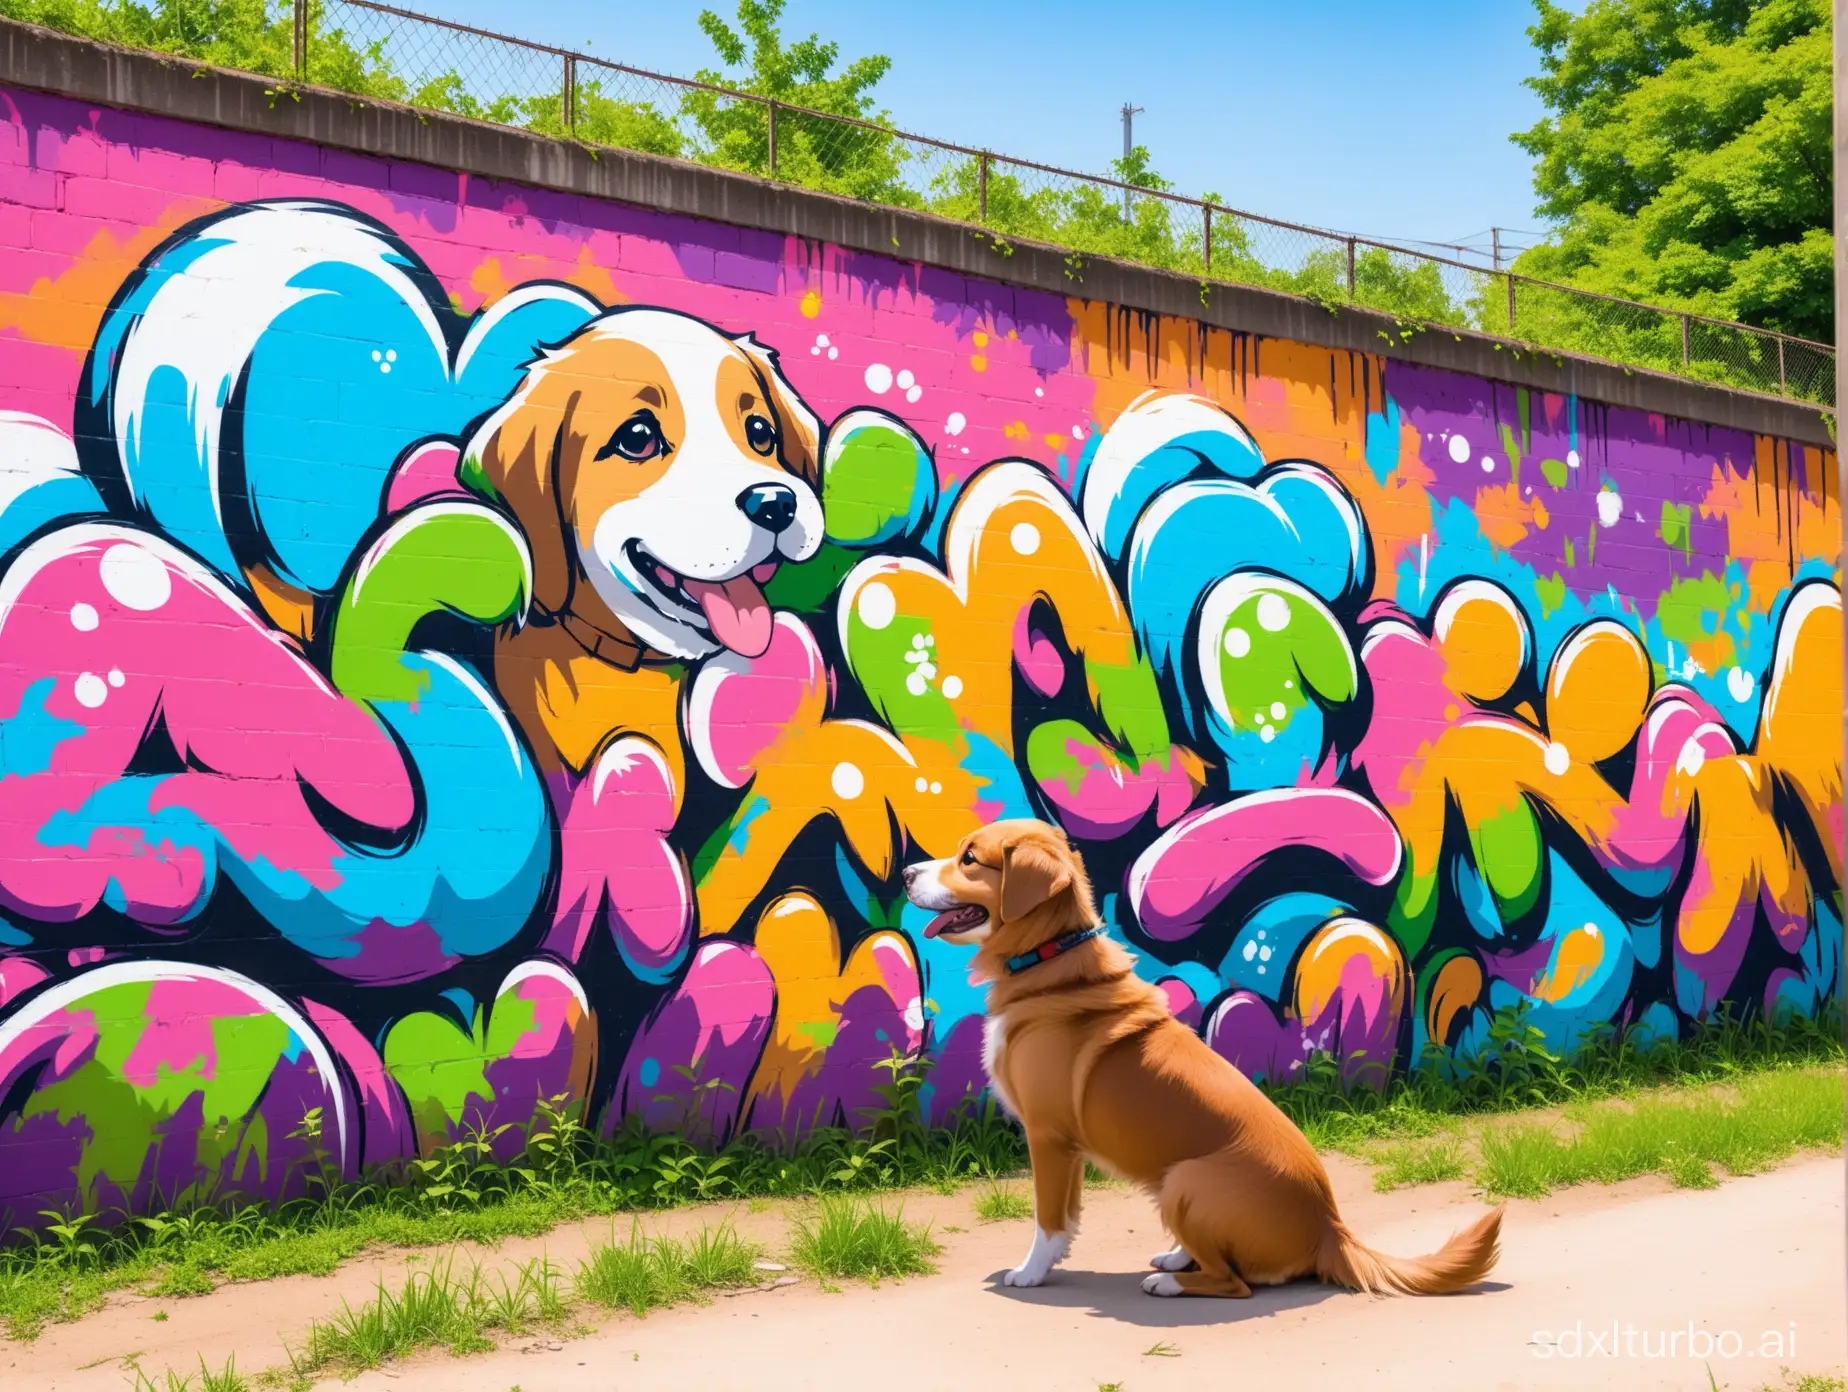 Vibrant-Graffiti-Art-Amidst-Joyful-Canine-Play-in-Lush-Natural-Surroundings